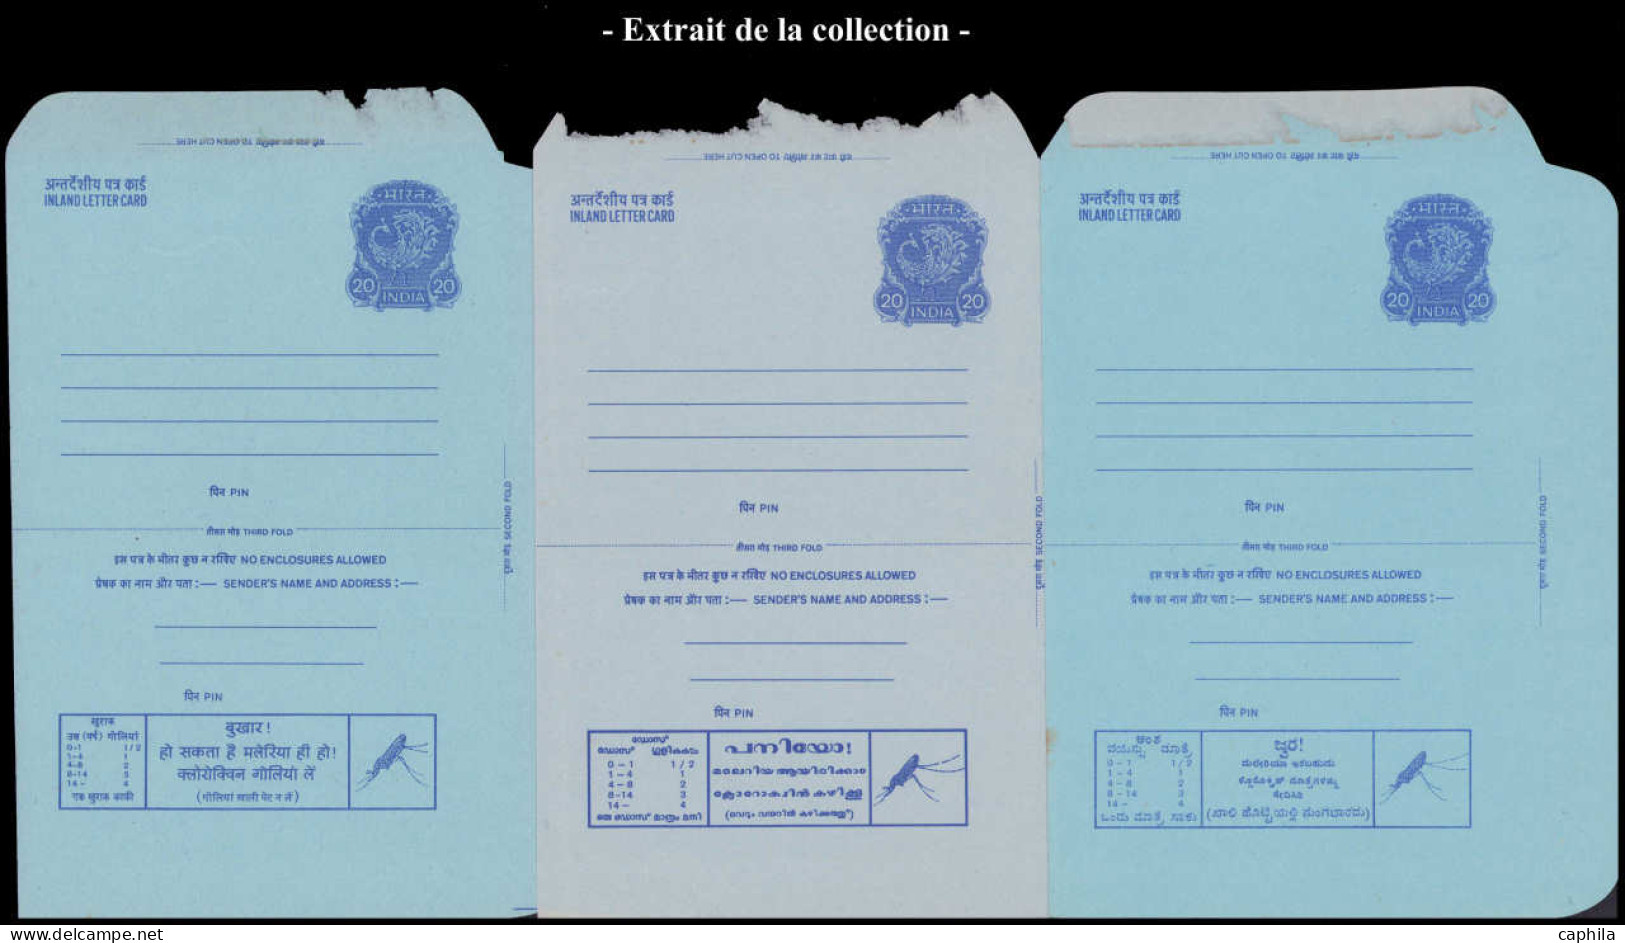 INDE  REPUBLIQUE Entiers Postaux N - Collection de 620 entiers publicitaires 1965/1985, dont Cp, Aérogramme, enveloppes,